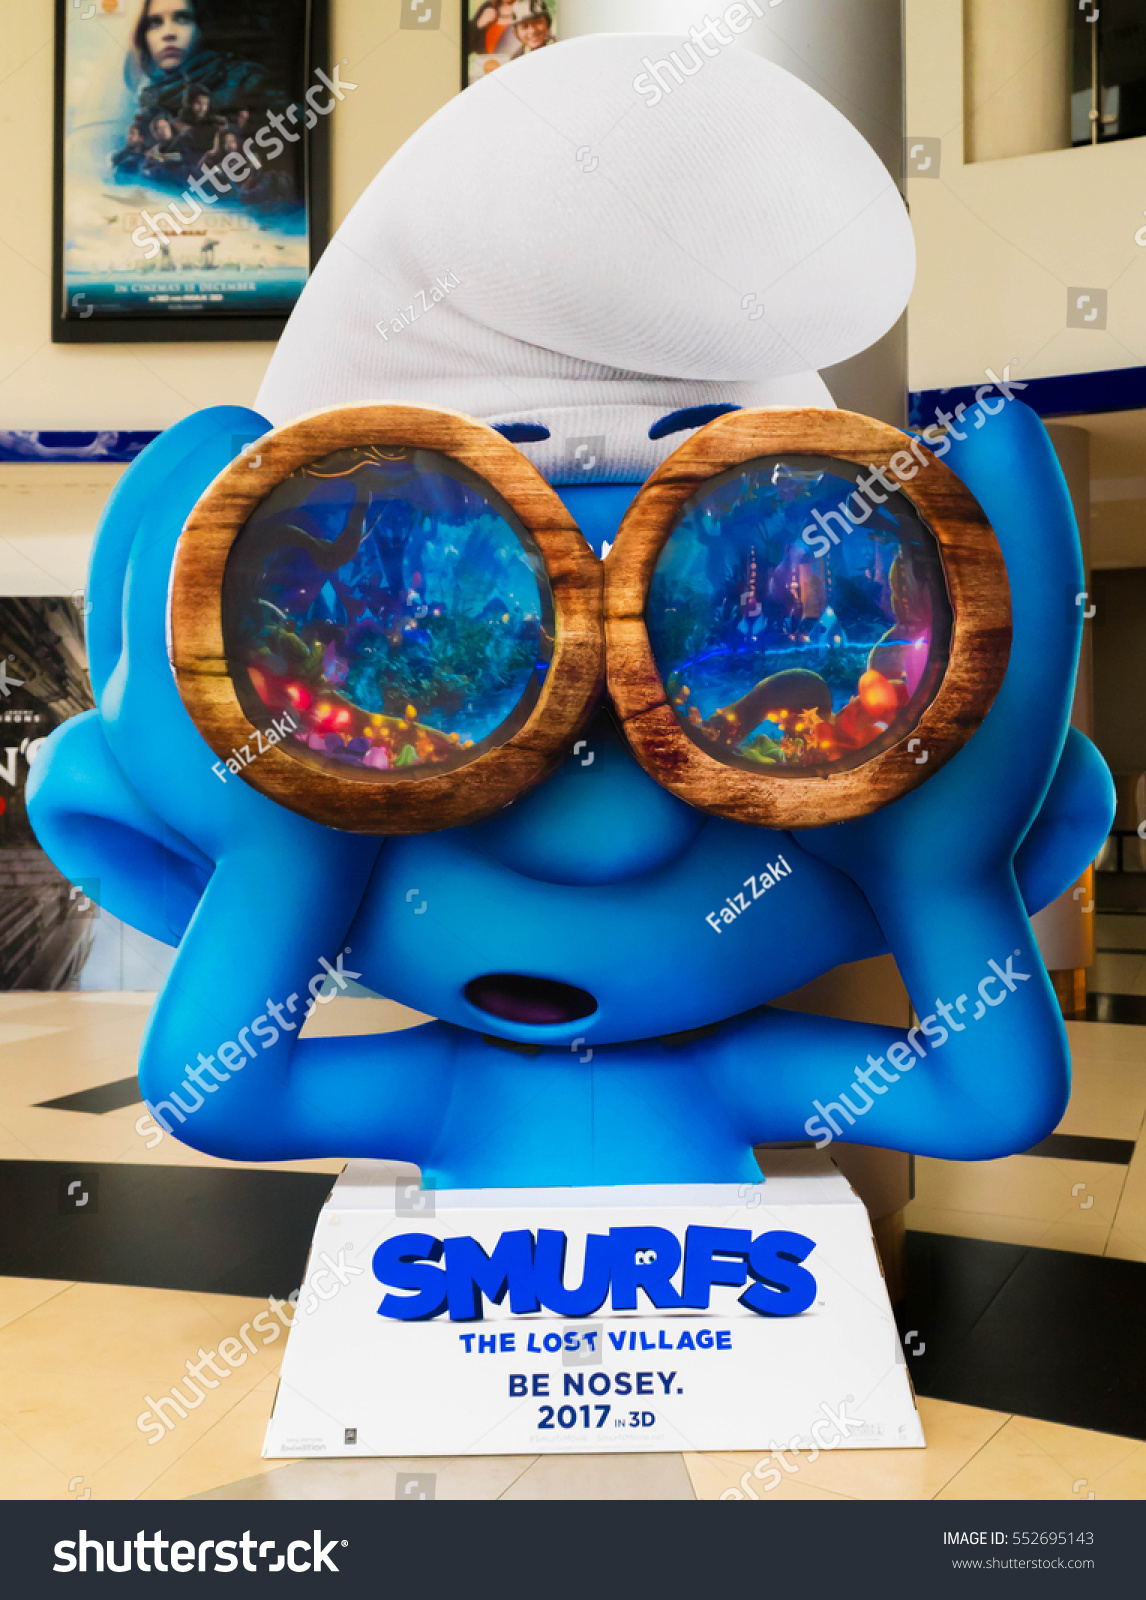 smurfs movie 2016